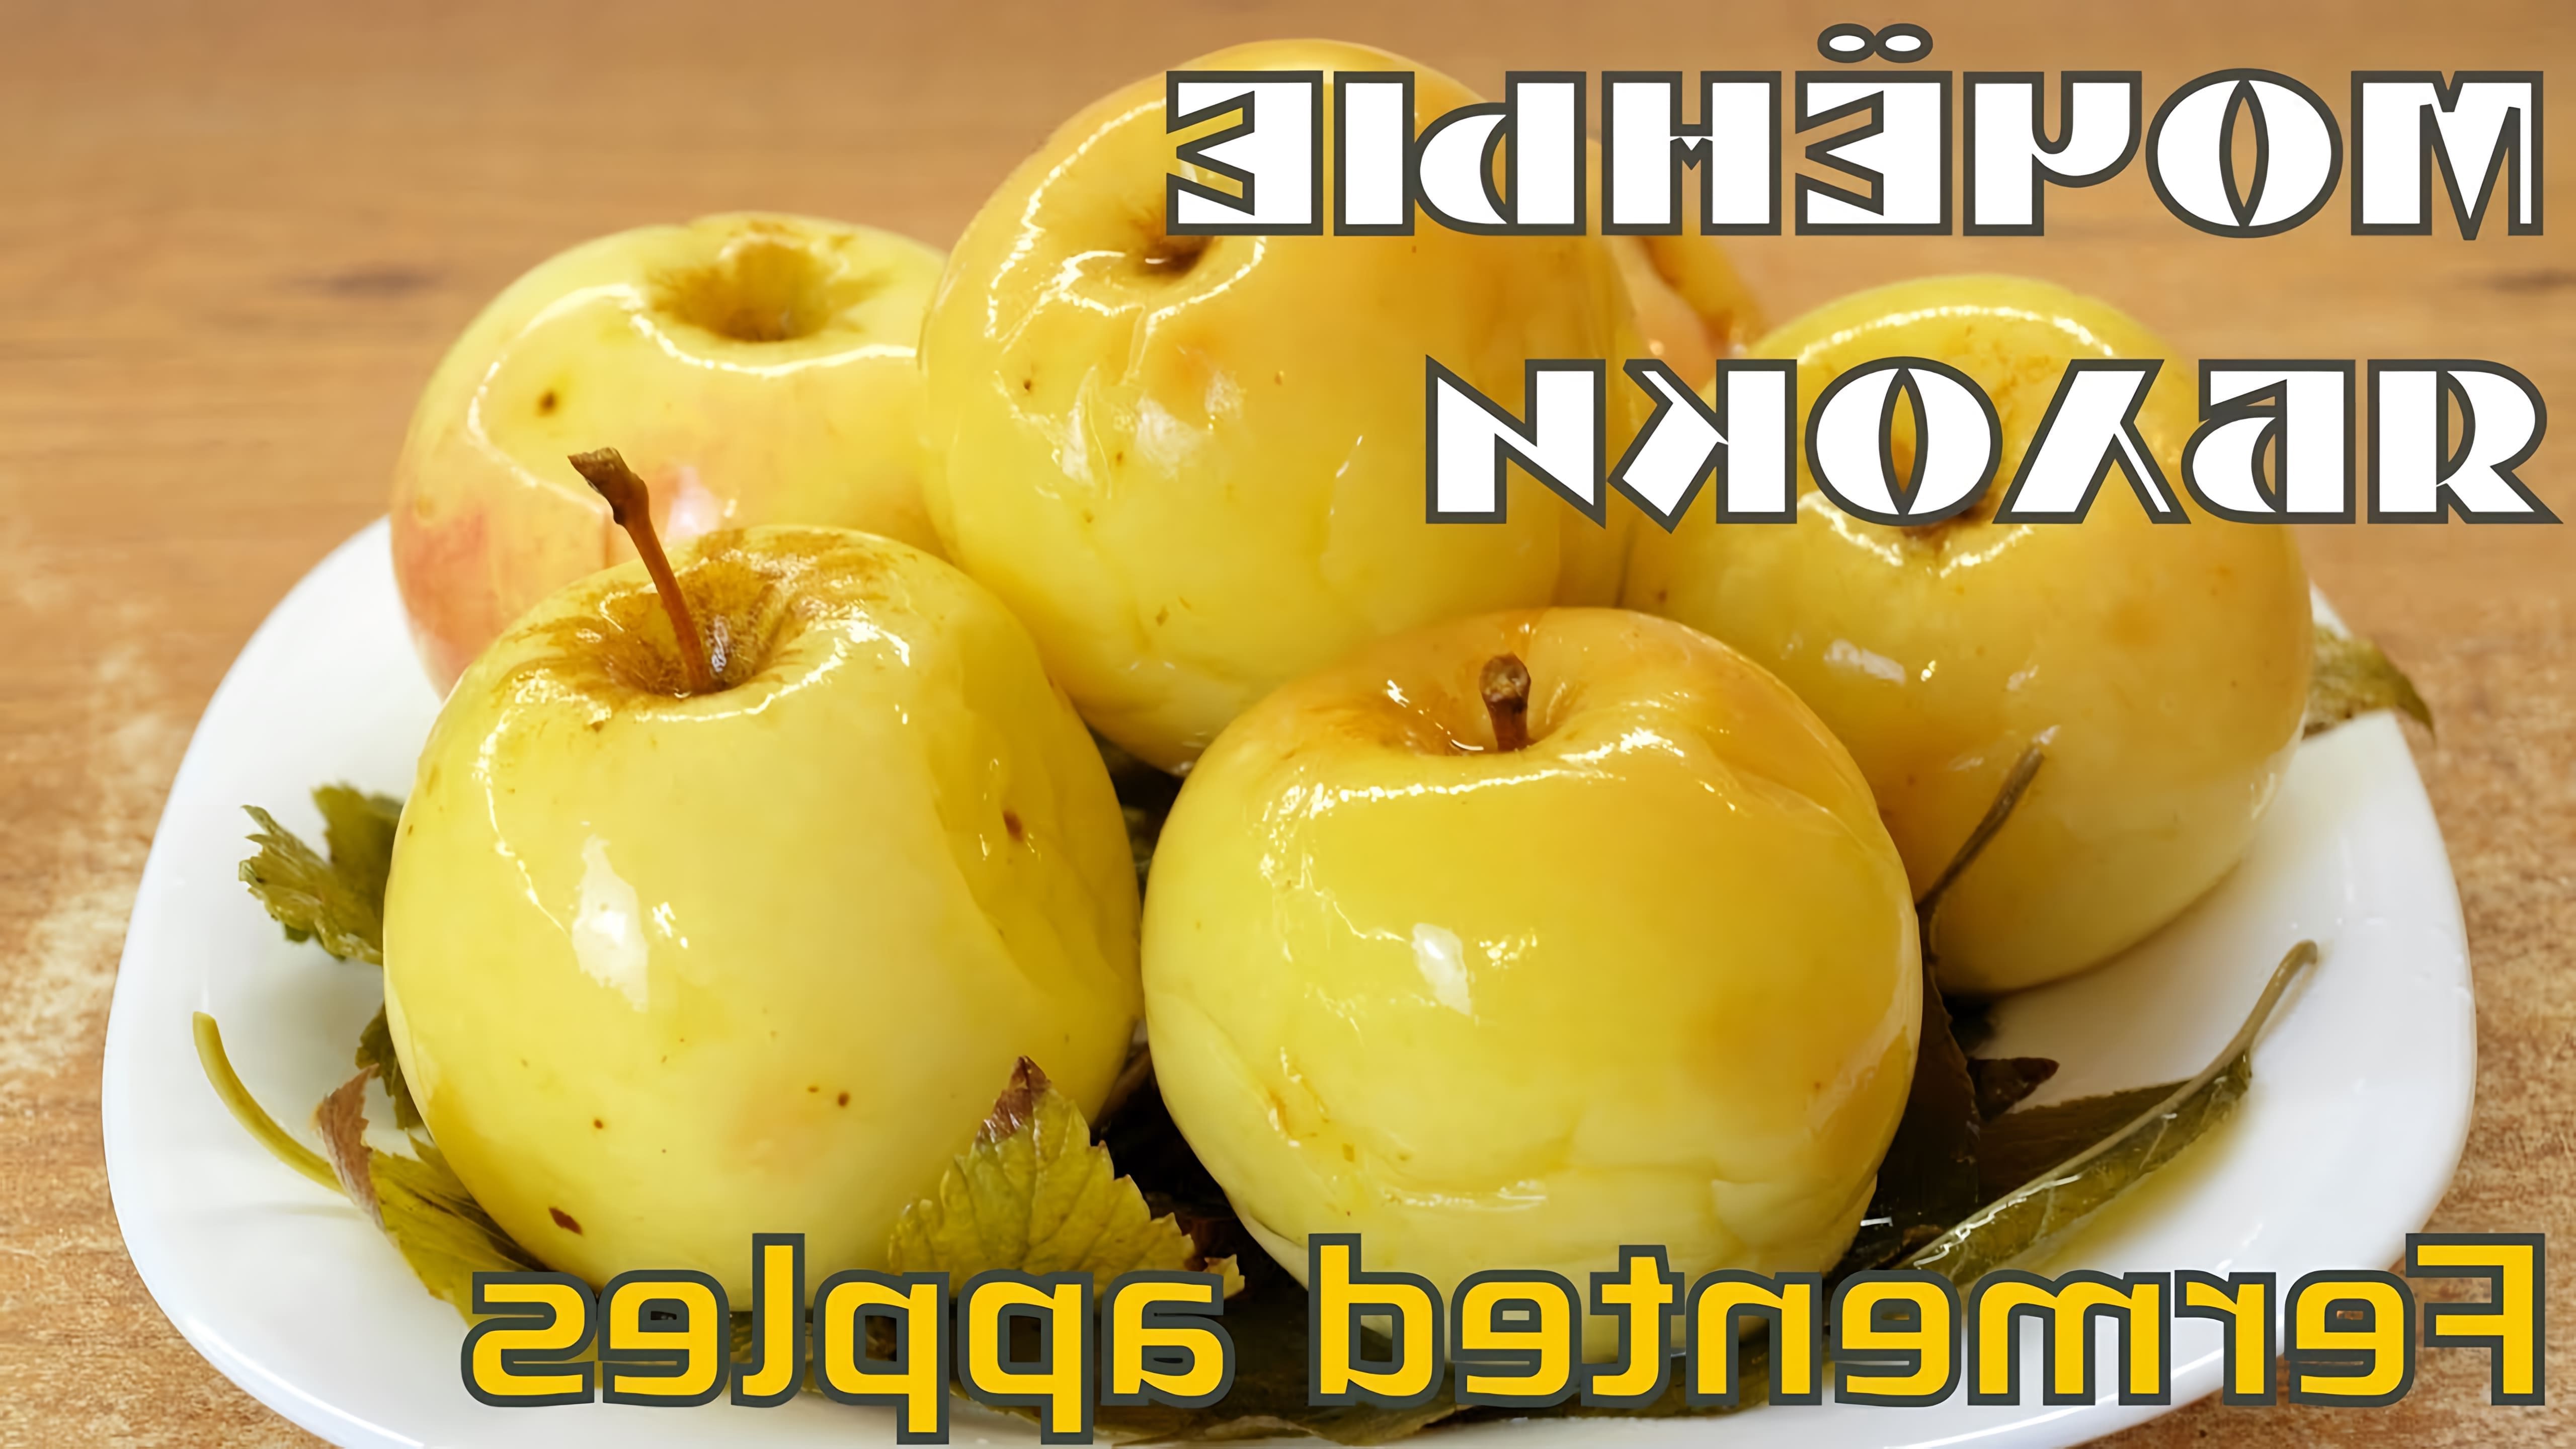 В данном видео Елена Баженова показывает, как приготовить мочёные яблоки в банках